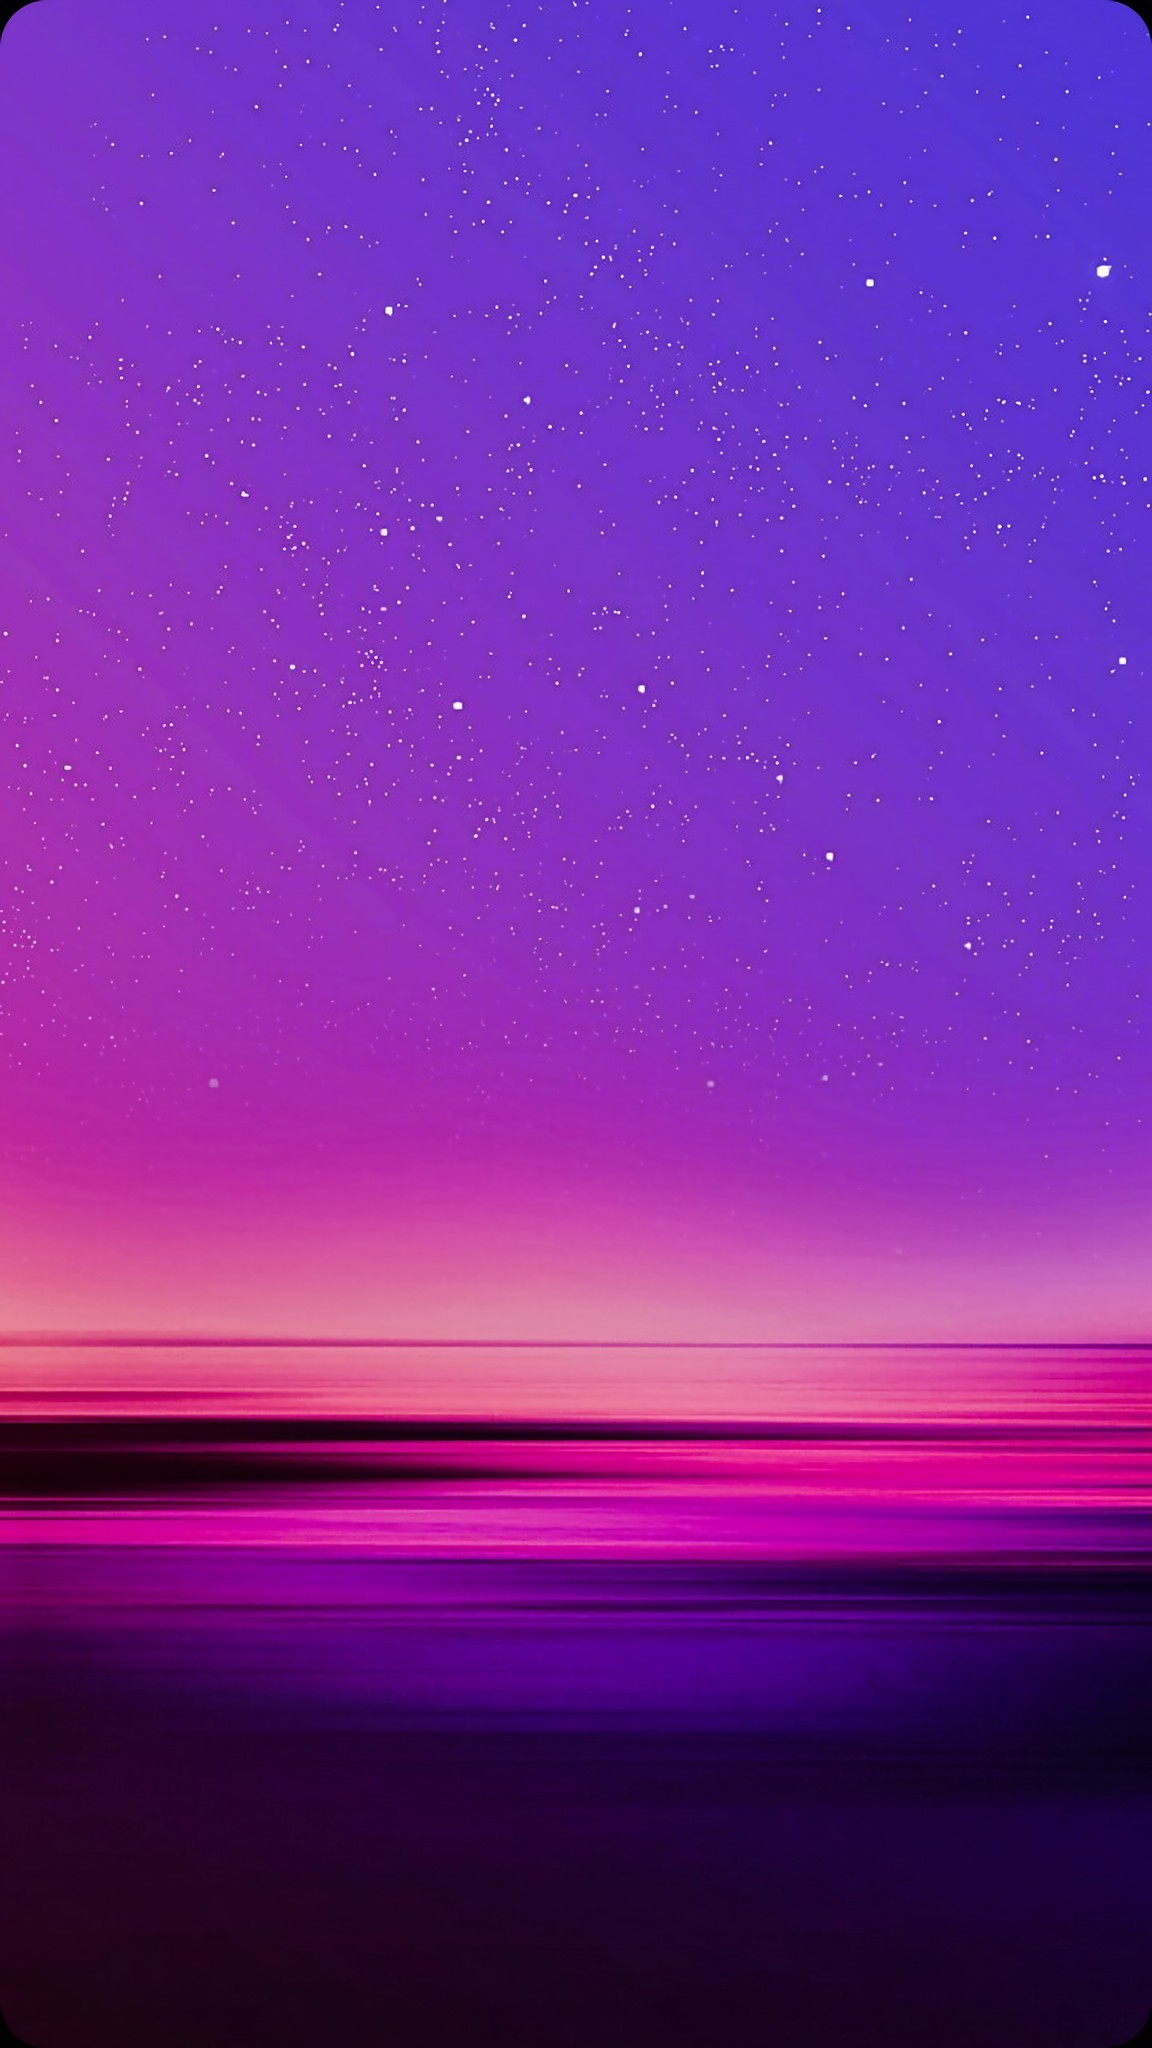 1152x2048 Lindo cielo morado | Pretty purple sky